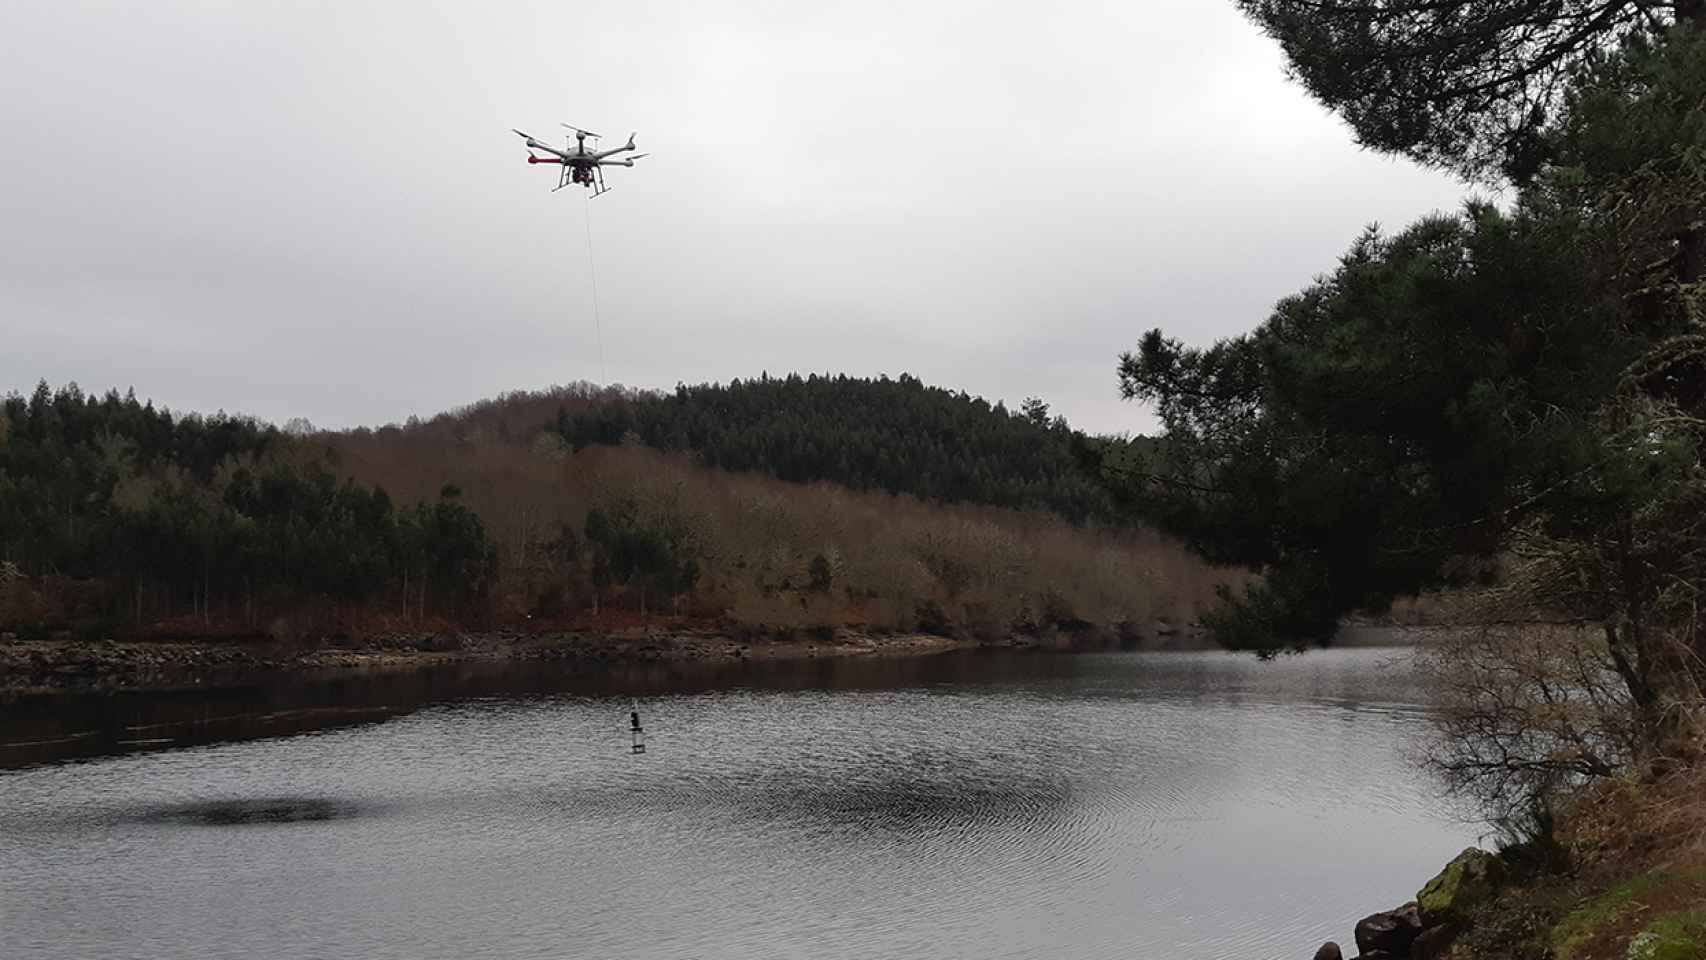 La prueba del dron desarrollado por Indra, Sixtema y Adantia.